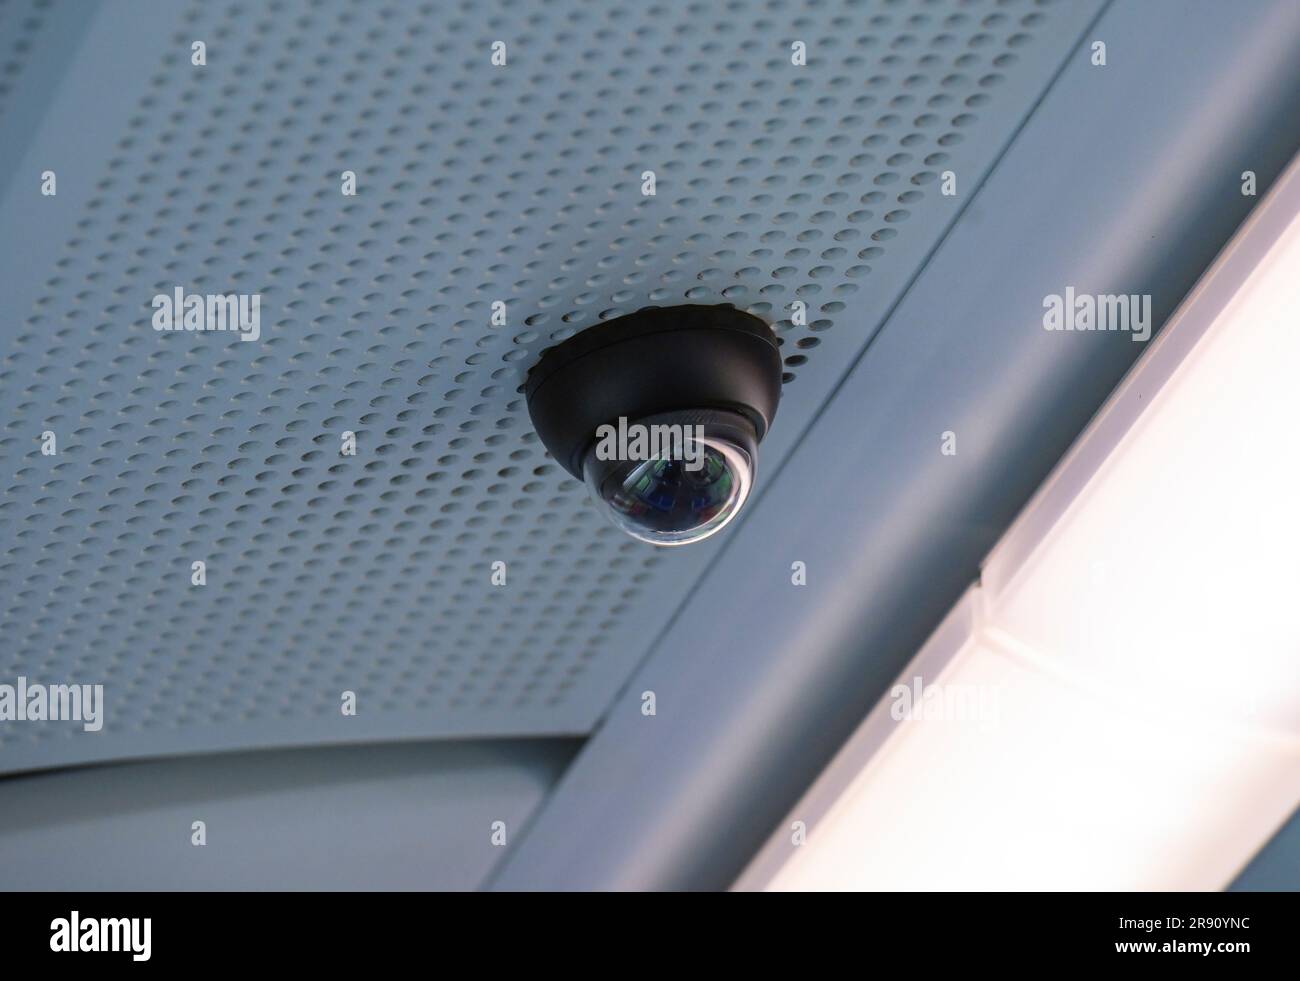 Überwachungskamera in einer Regionalbahn, Wiesbaden, Assia, Deutschland Foto Stock